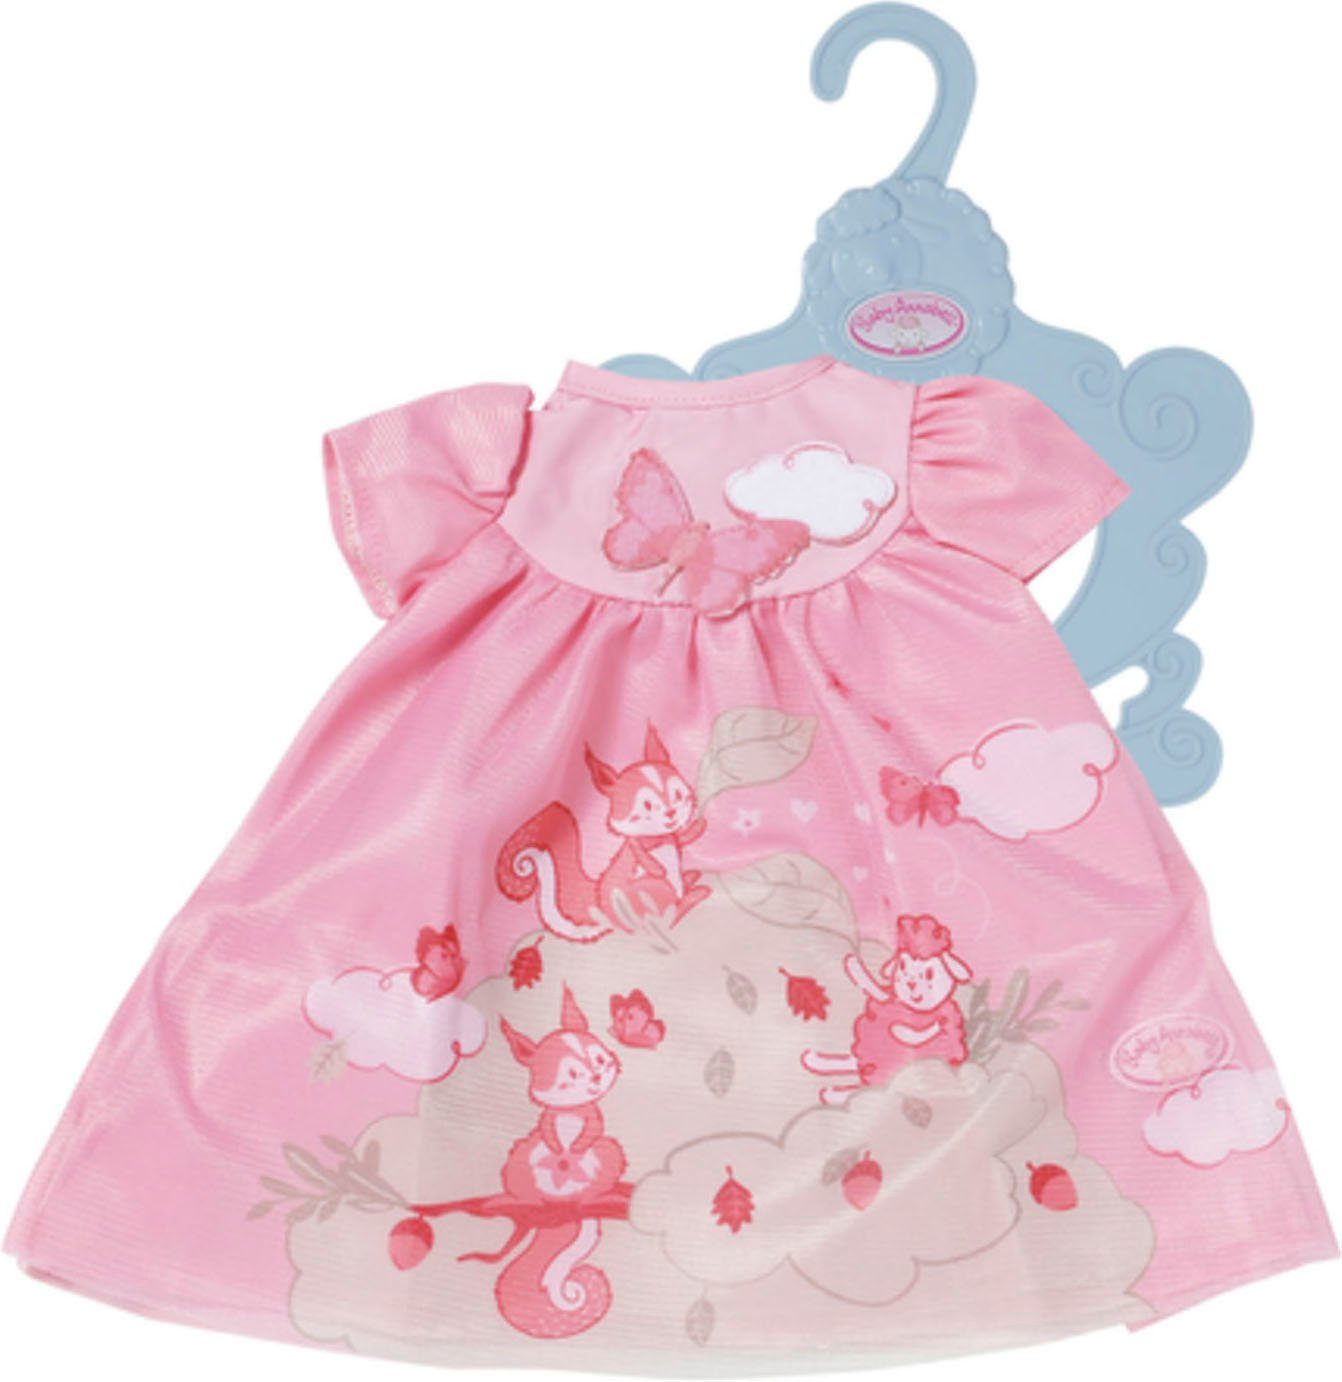 Baby Annabell Puppenkleidung Kleid rosa Eichhörnchen, 43 cm